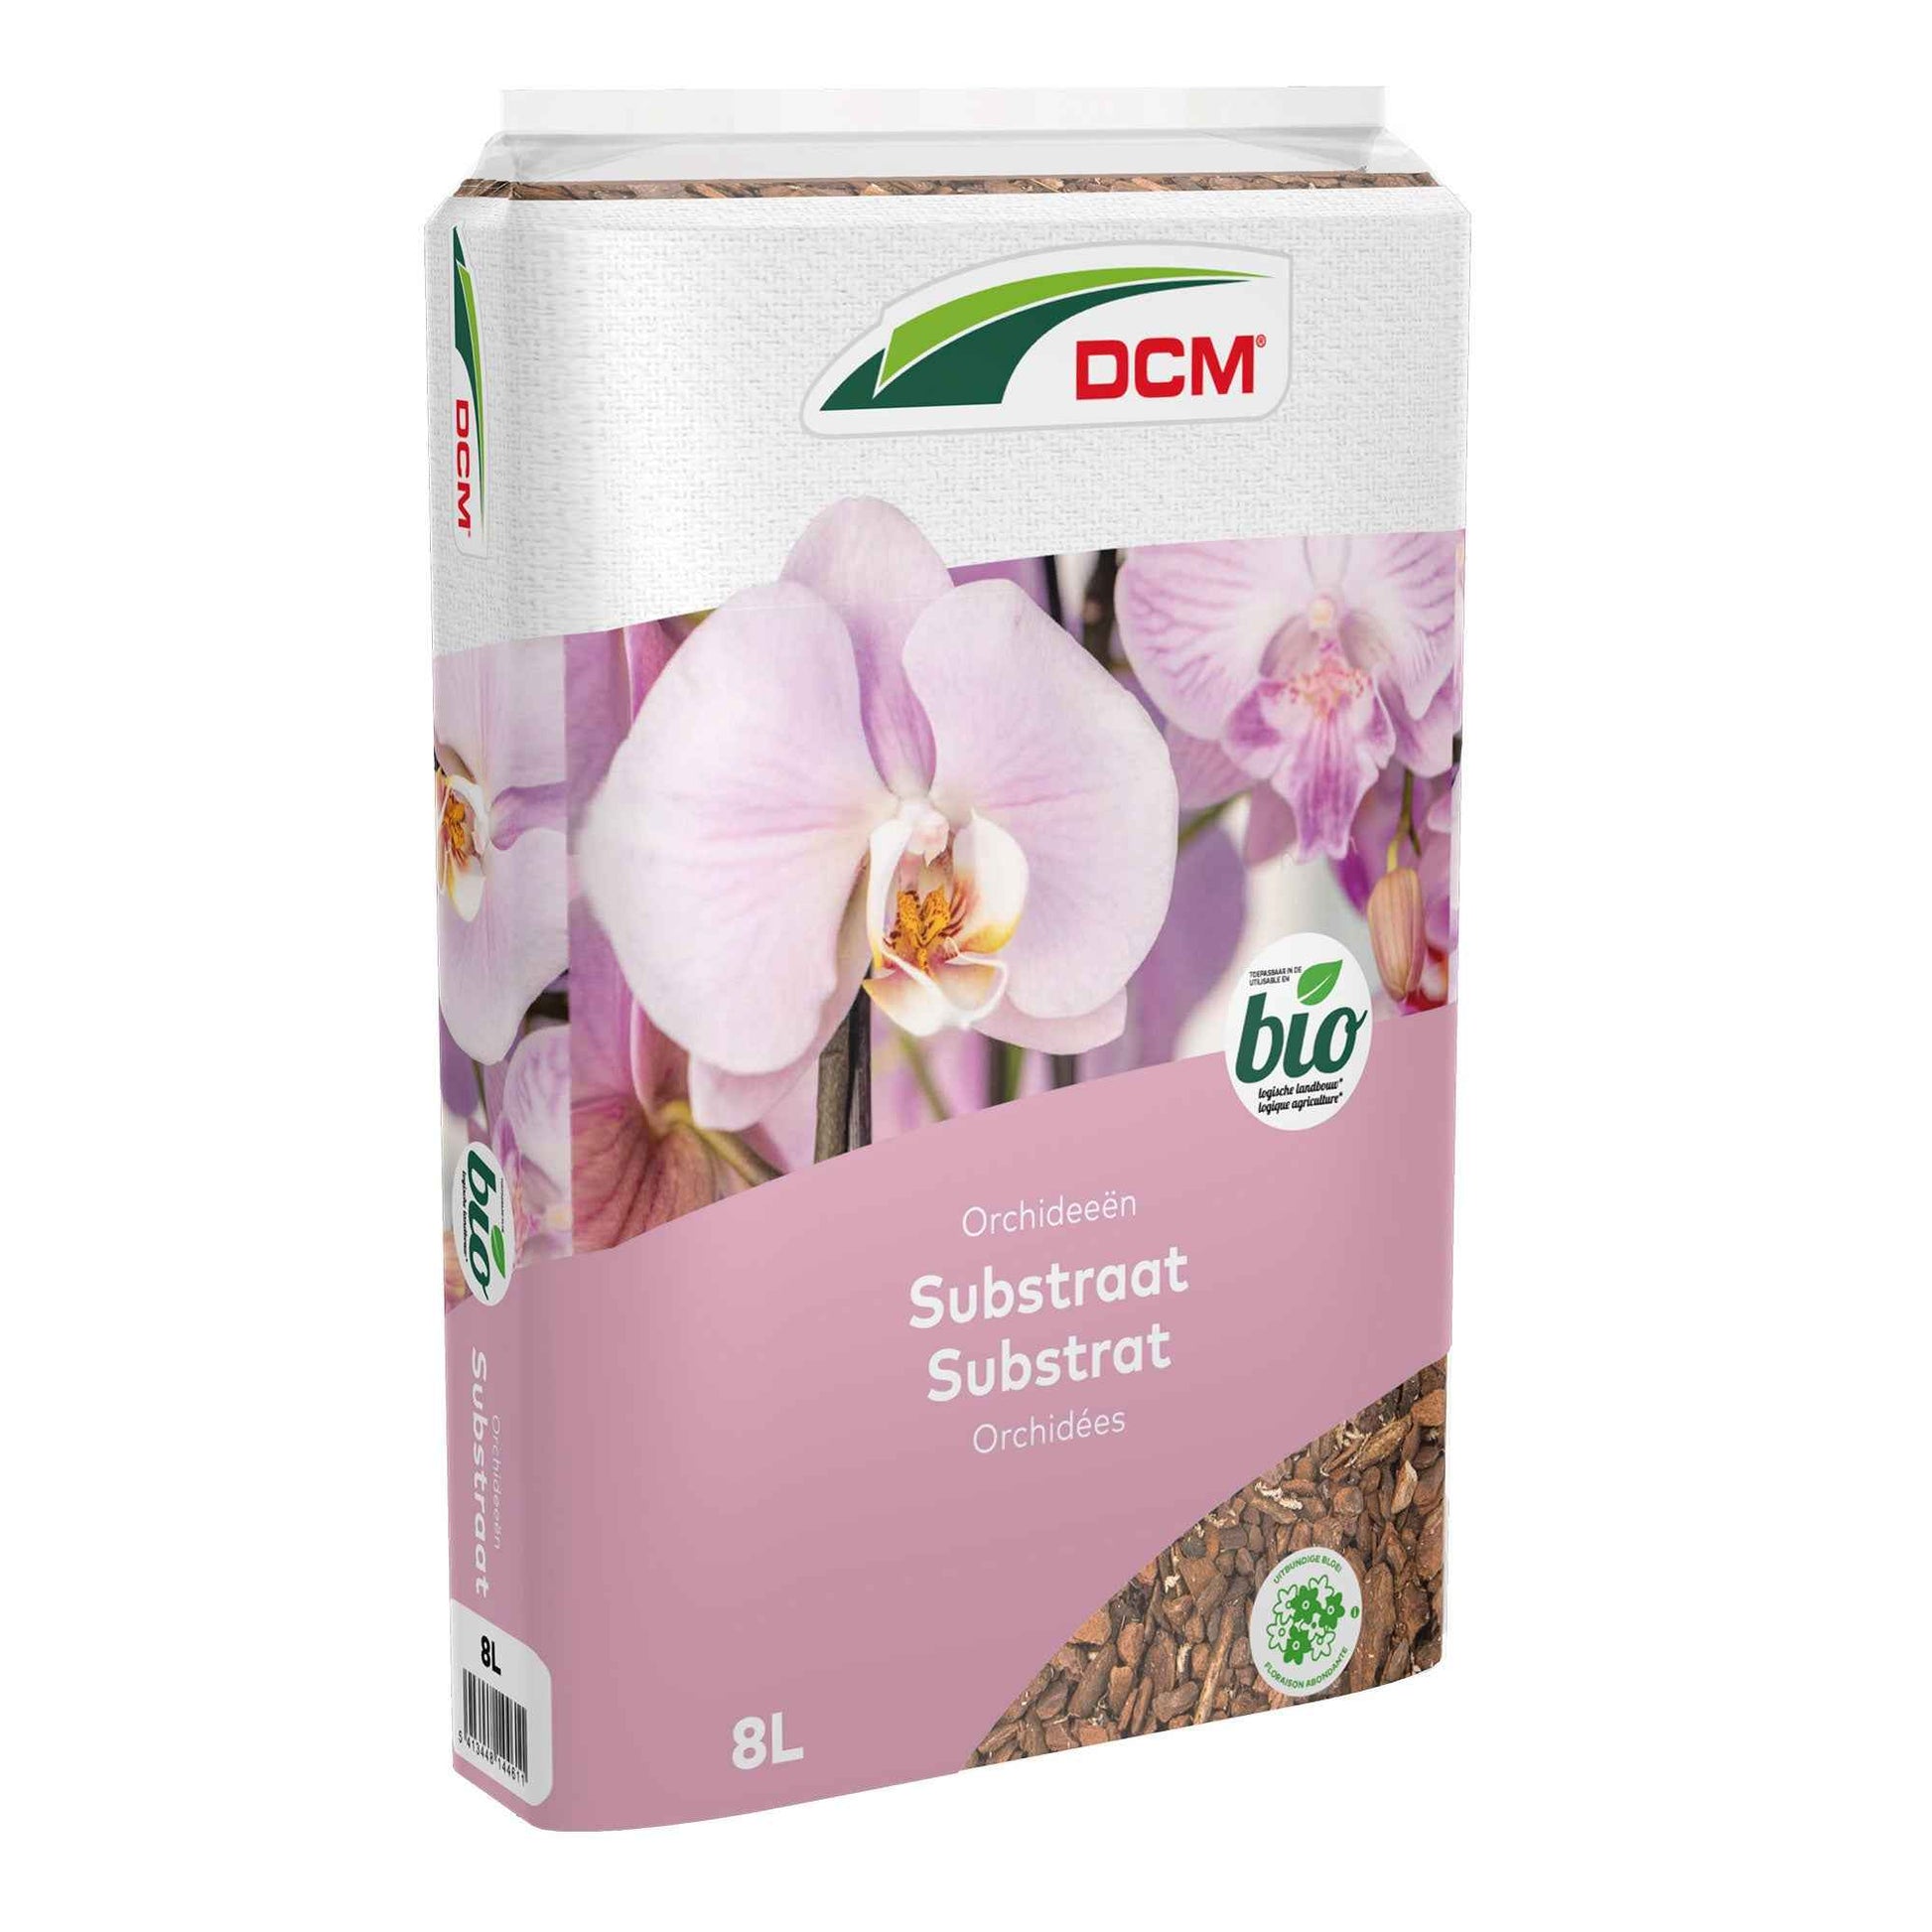 Substrat pour orchidées - Biologique 8 litres - DCM - Engrais biologique